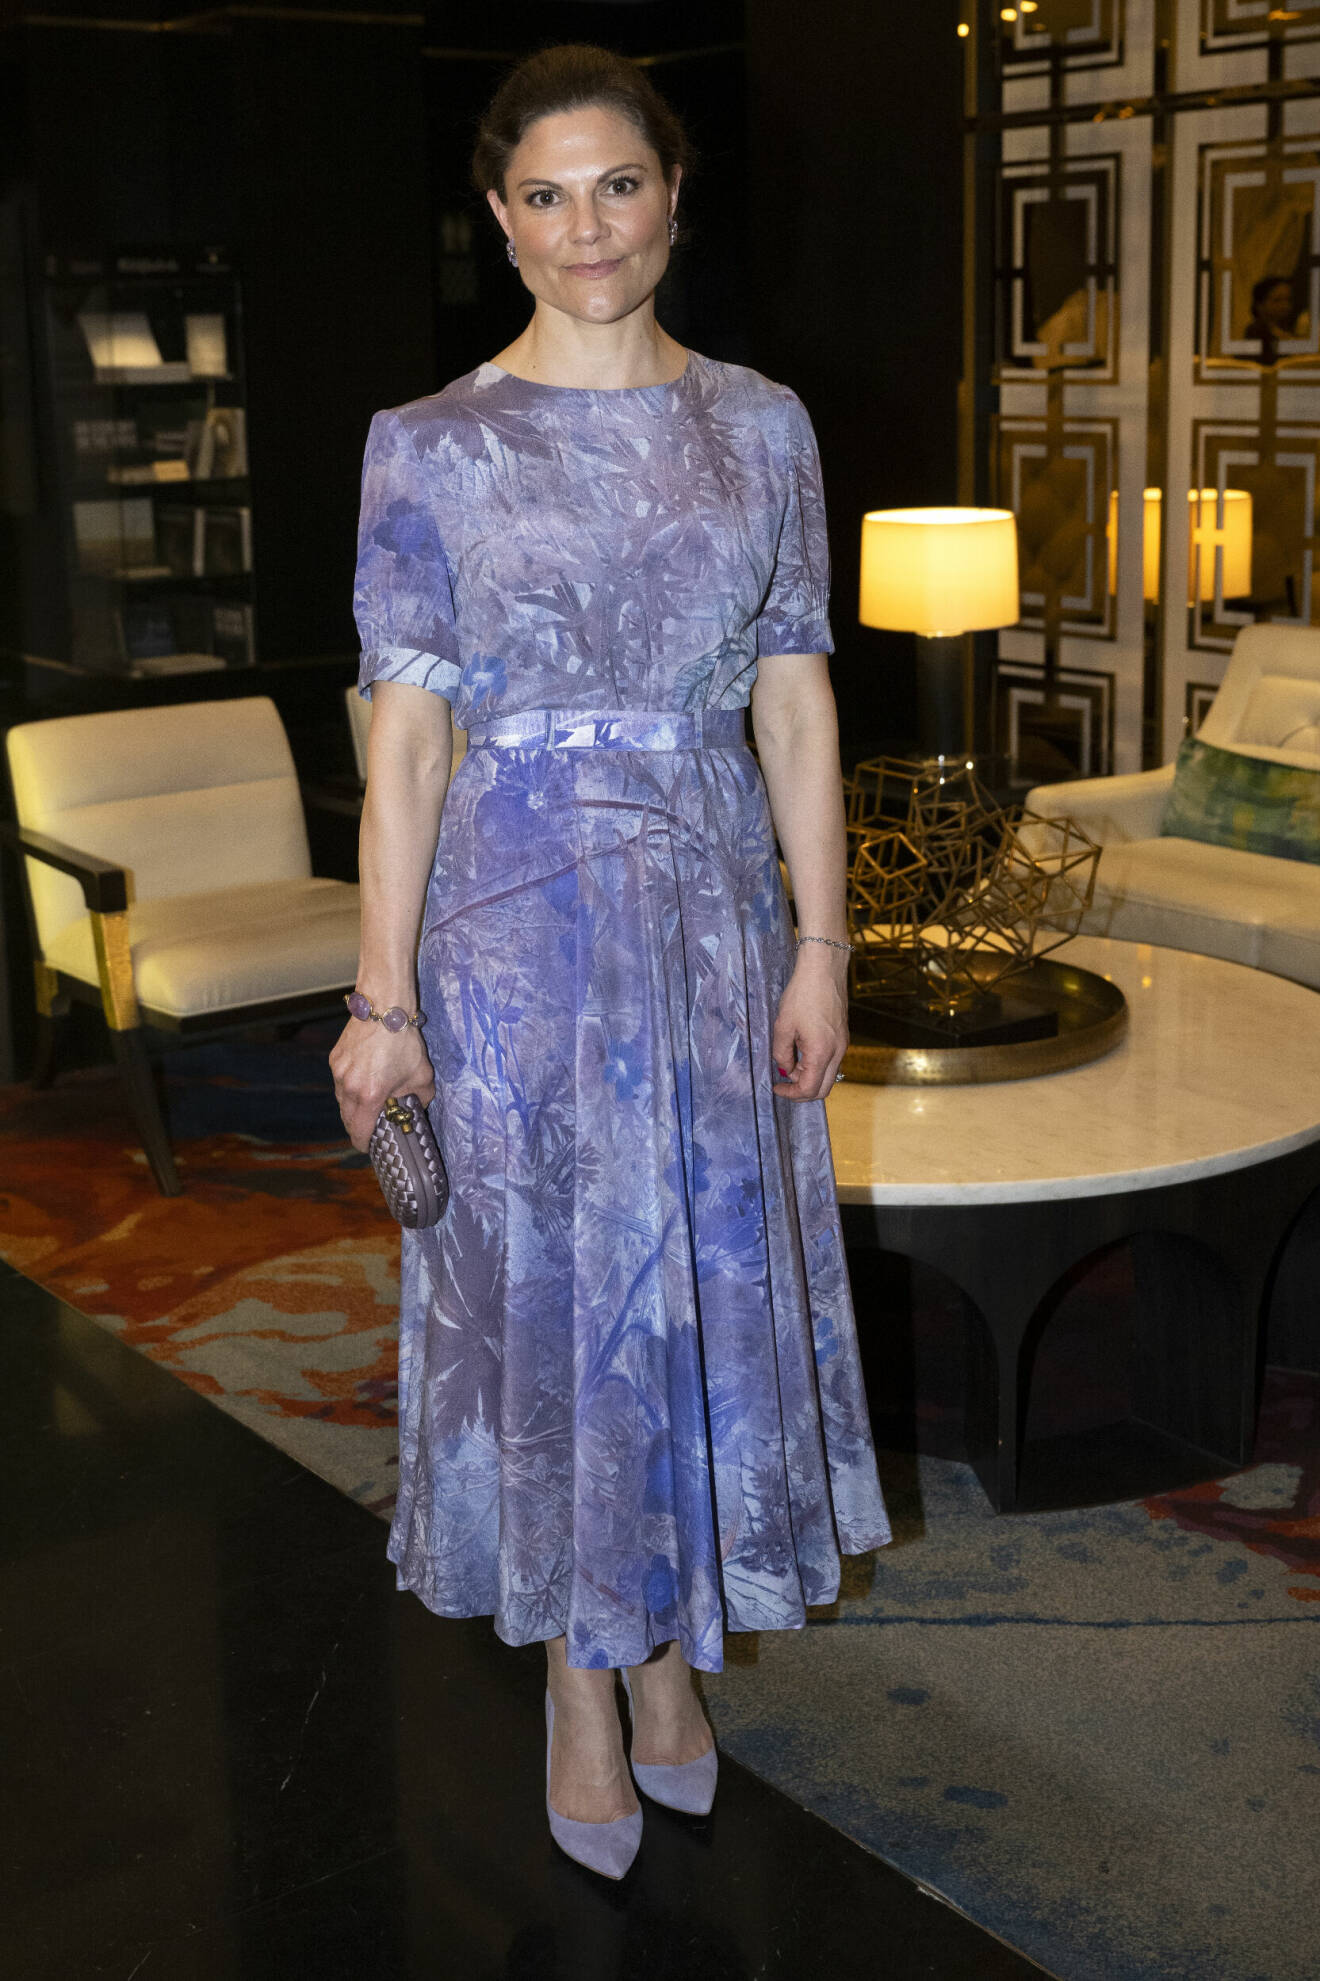 Kronprinsessan Victorias look våren 2024 – lila klänning från Martin Bergström / Studio Martin Bergström